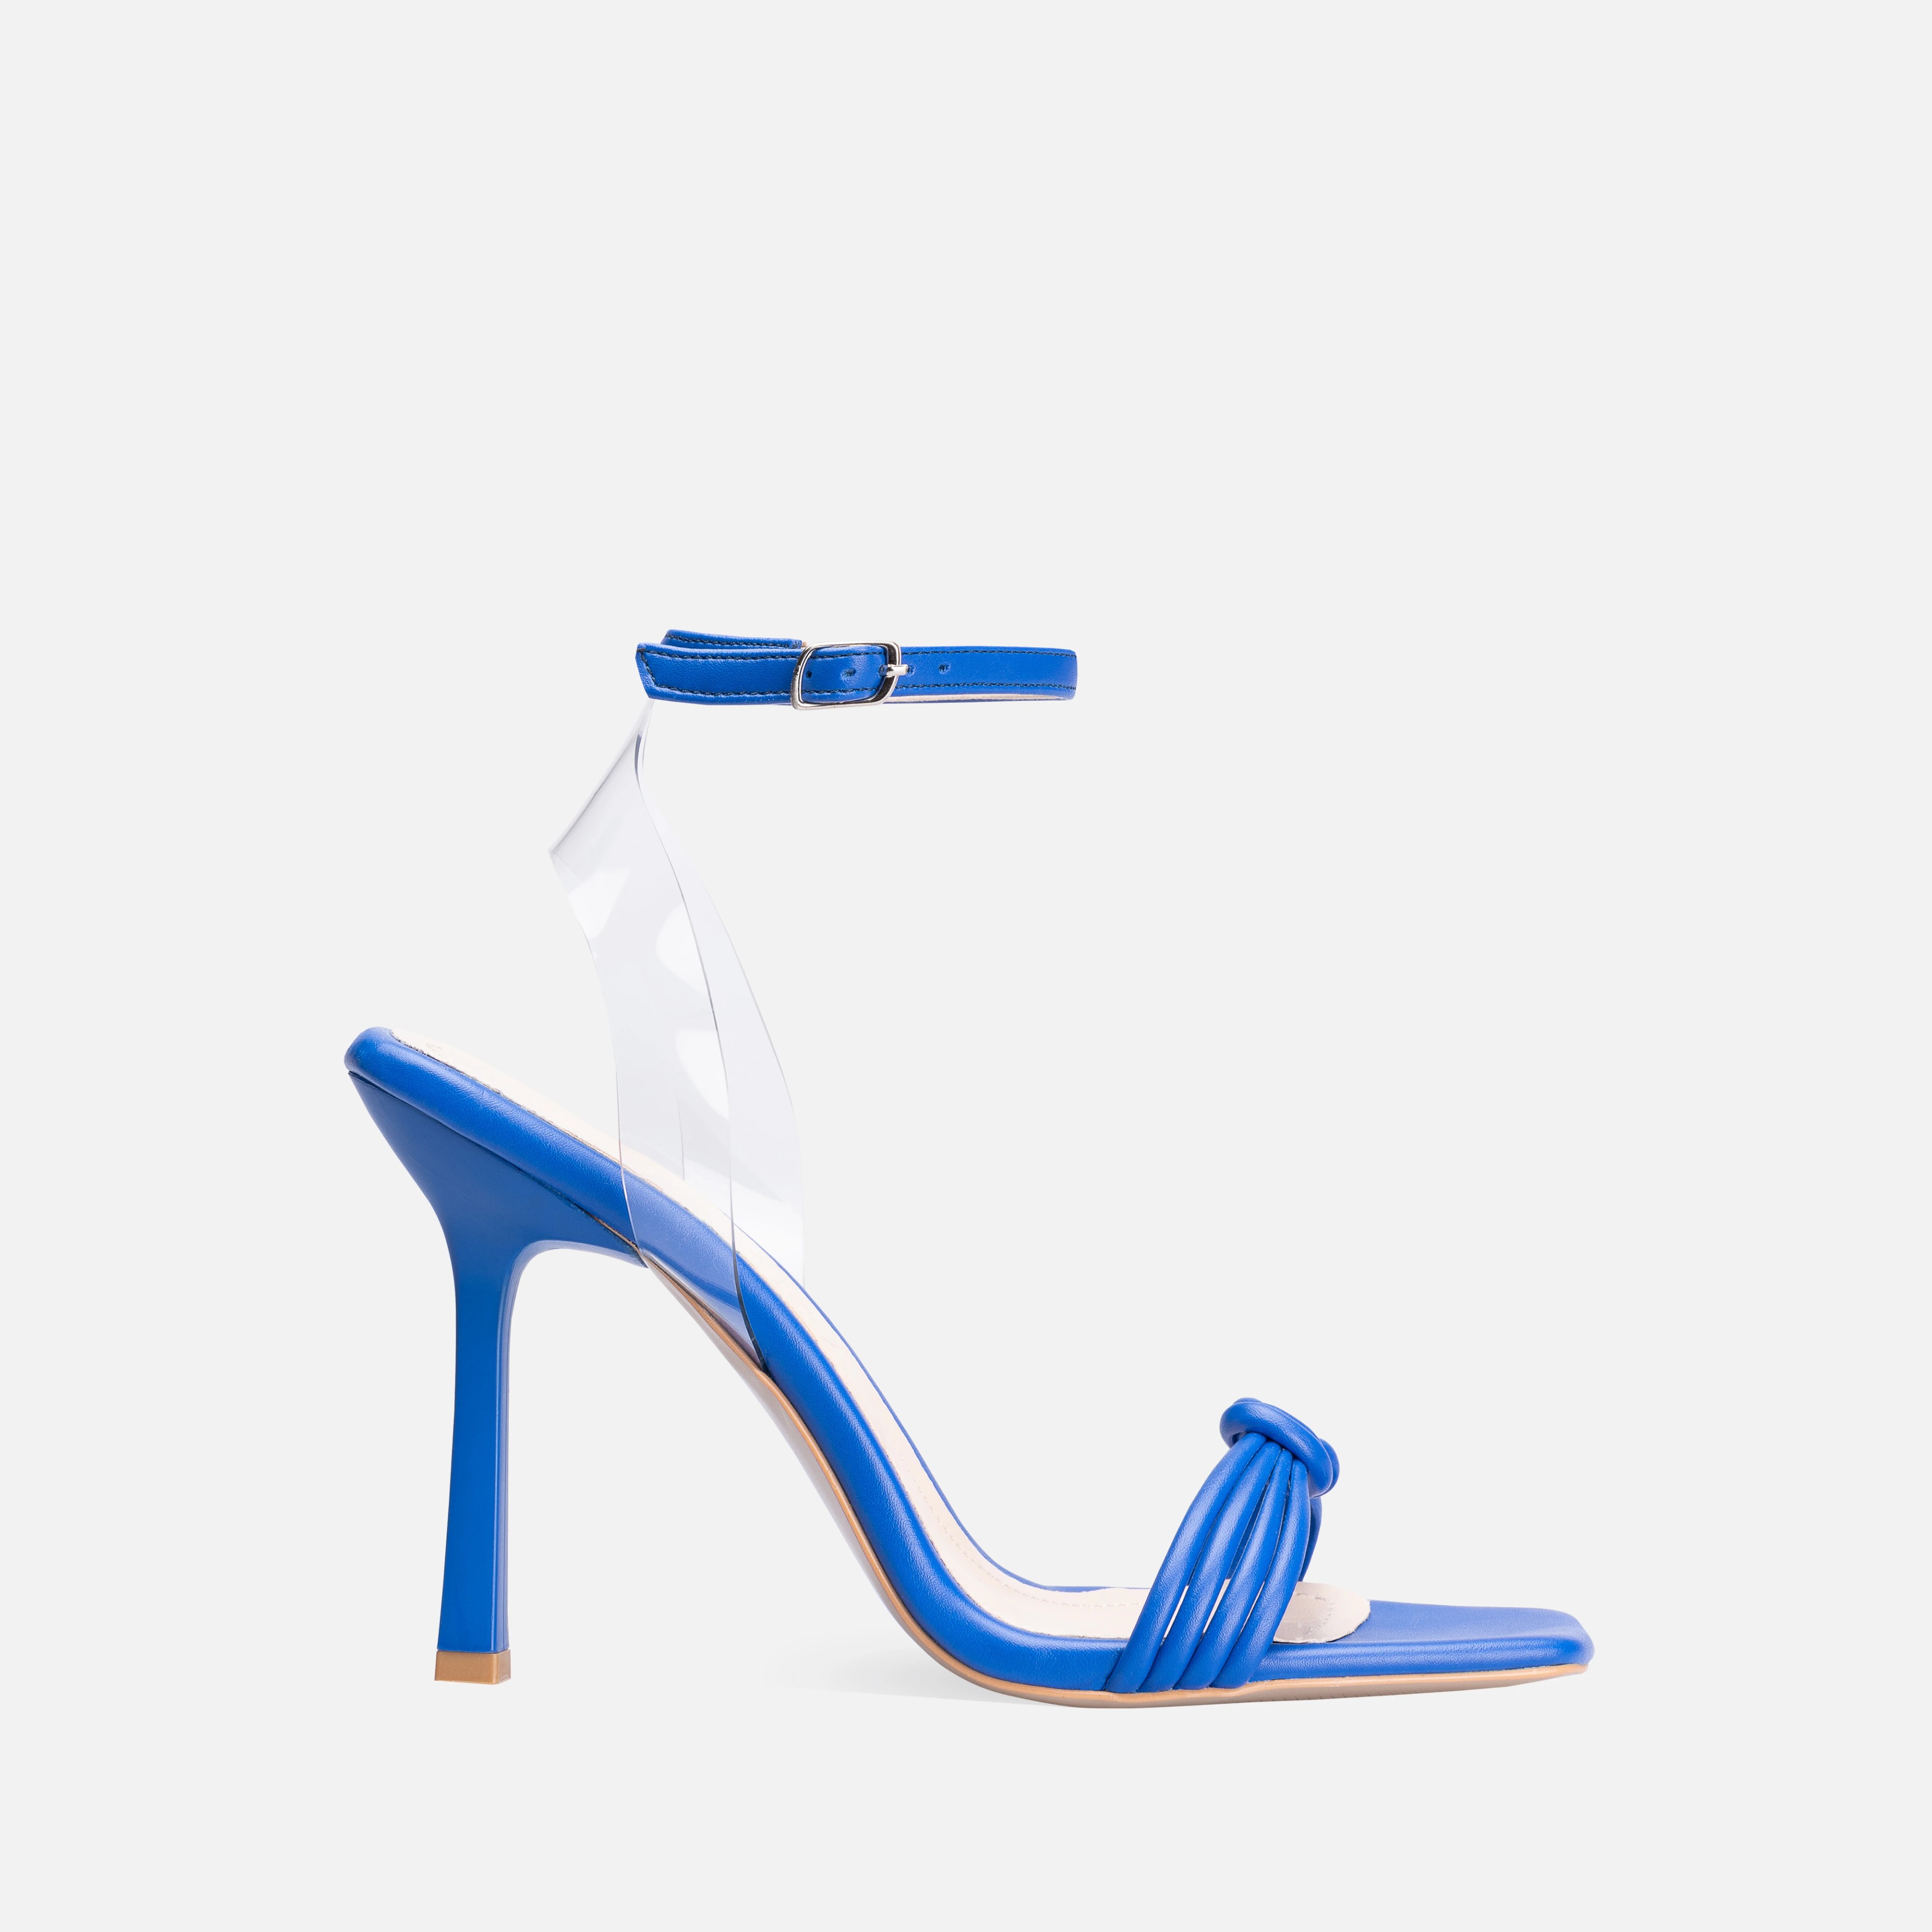 Şeffaf Detaylı İnce Yüksek Topuklu Ayakkabı - Mavi